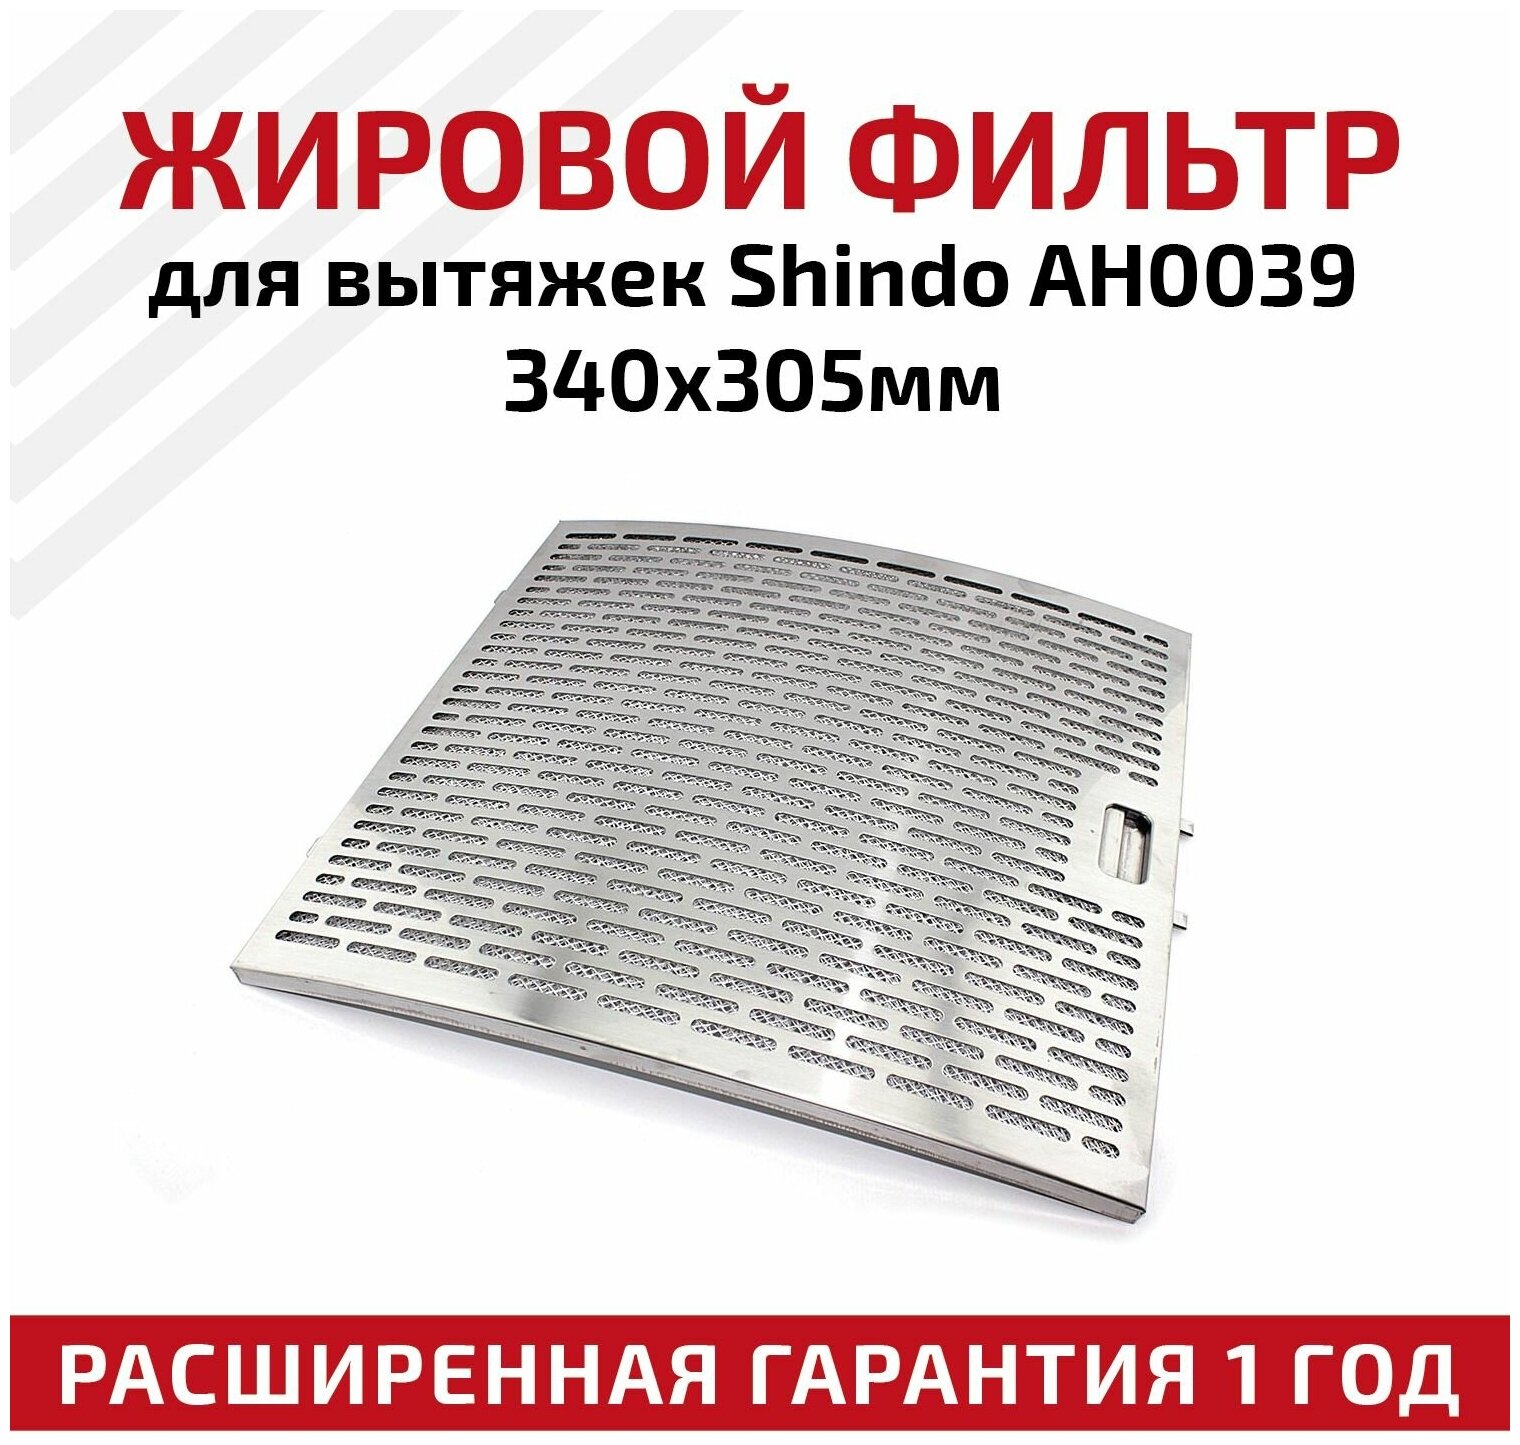 Жировой фильтр для вытяжек Shindo AH0039 340х305мм